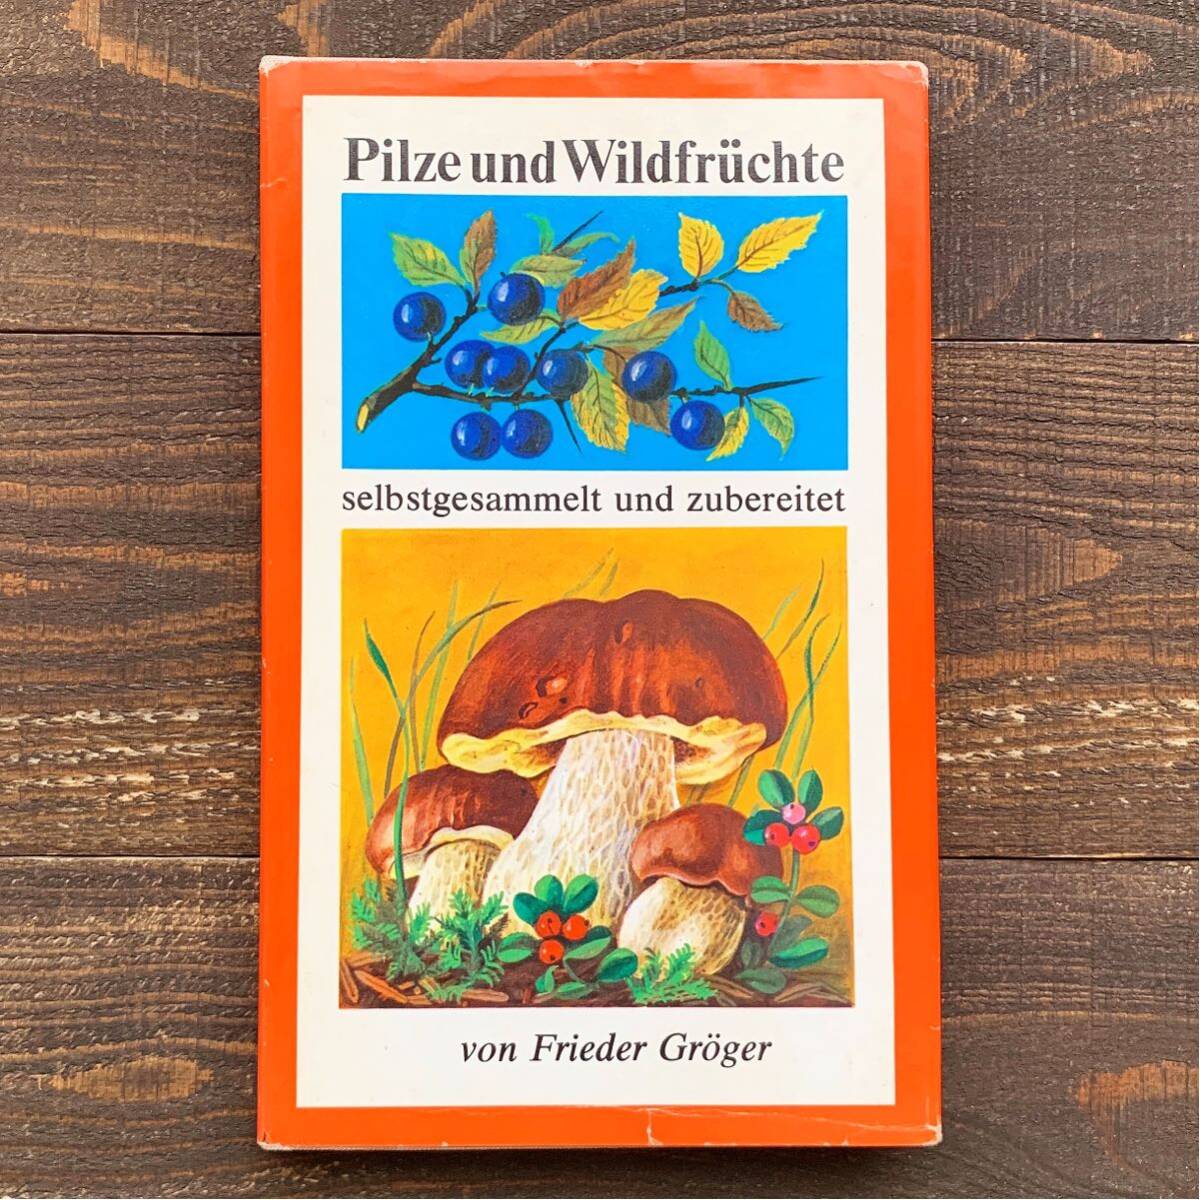 東ドイツの古いキノコと実の図鑑(Pilze und Wildfruchte 1979年)/アンティーク ヴィンテージ ヨーロッパ キノコ 木の実 インテリア DDR/の画像1